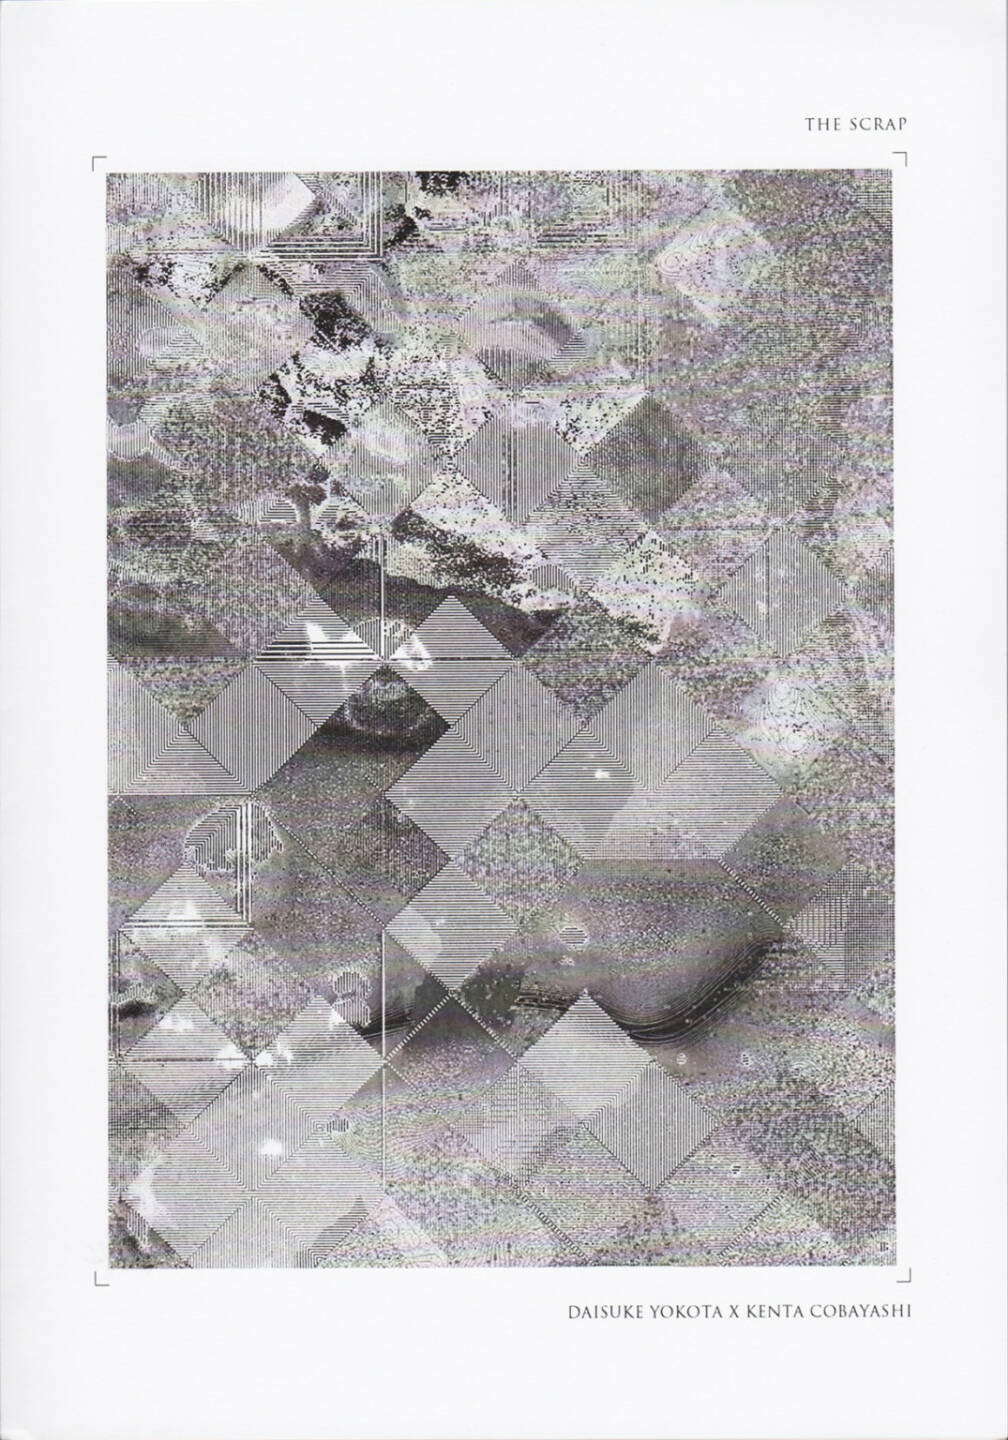 Kenta Cobayash x Daisuke Yokota - The Scrap, Self published 2015, Cover - http://josefchladek.com/book/kenta_cobayash_x_daisuke_yokota_-_the_scrap